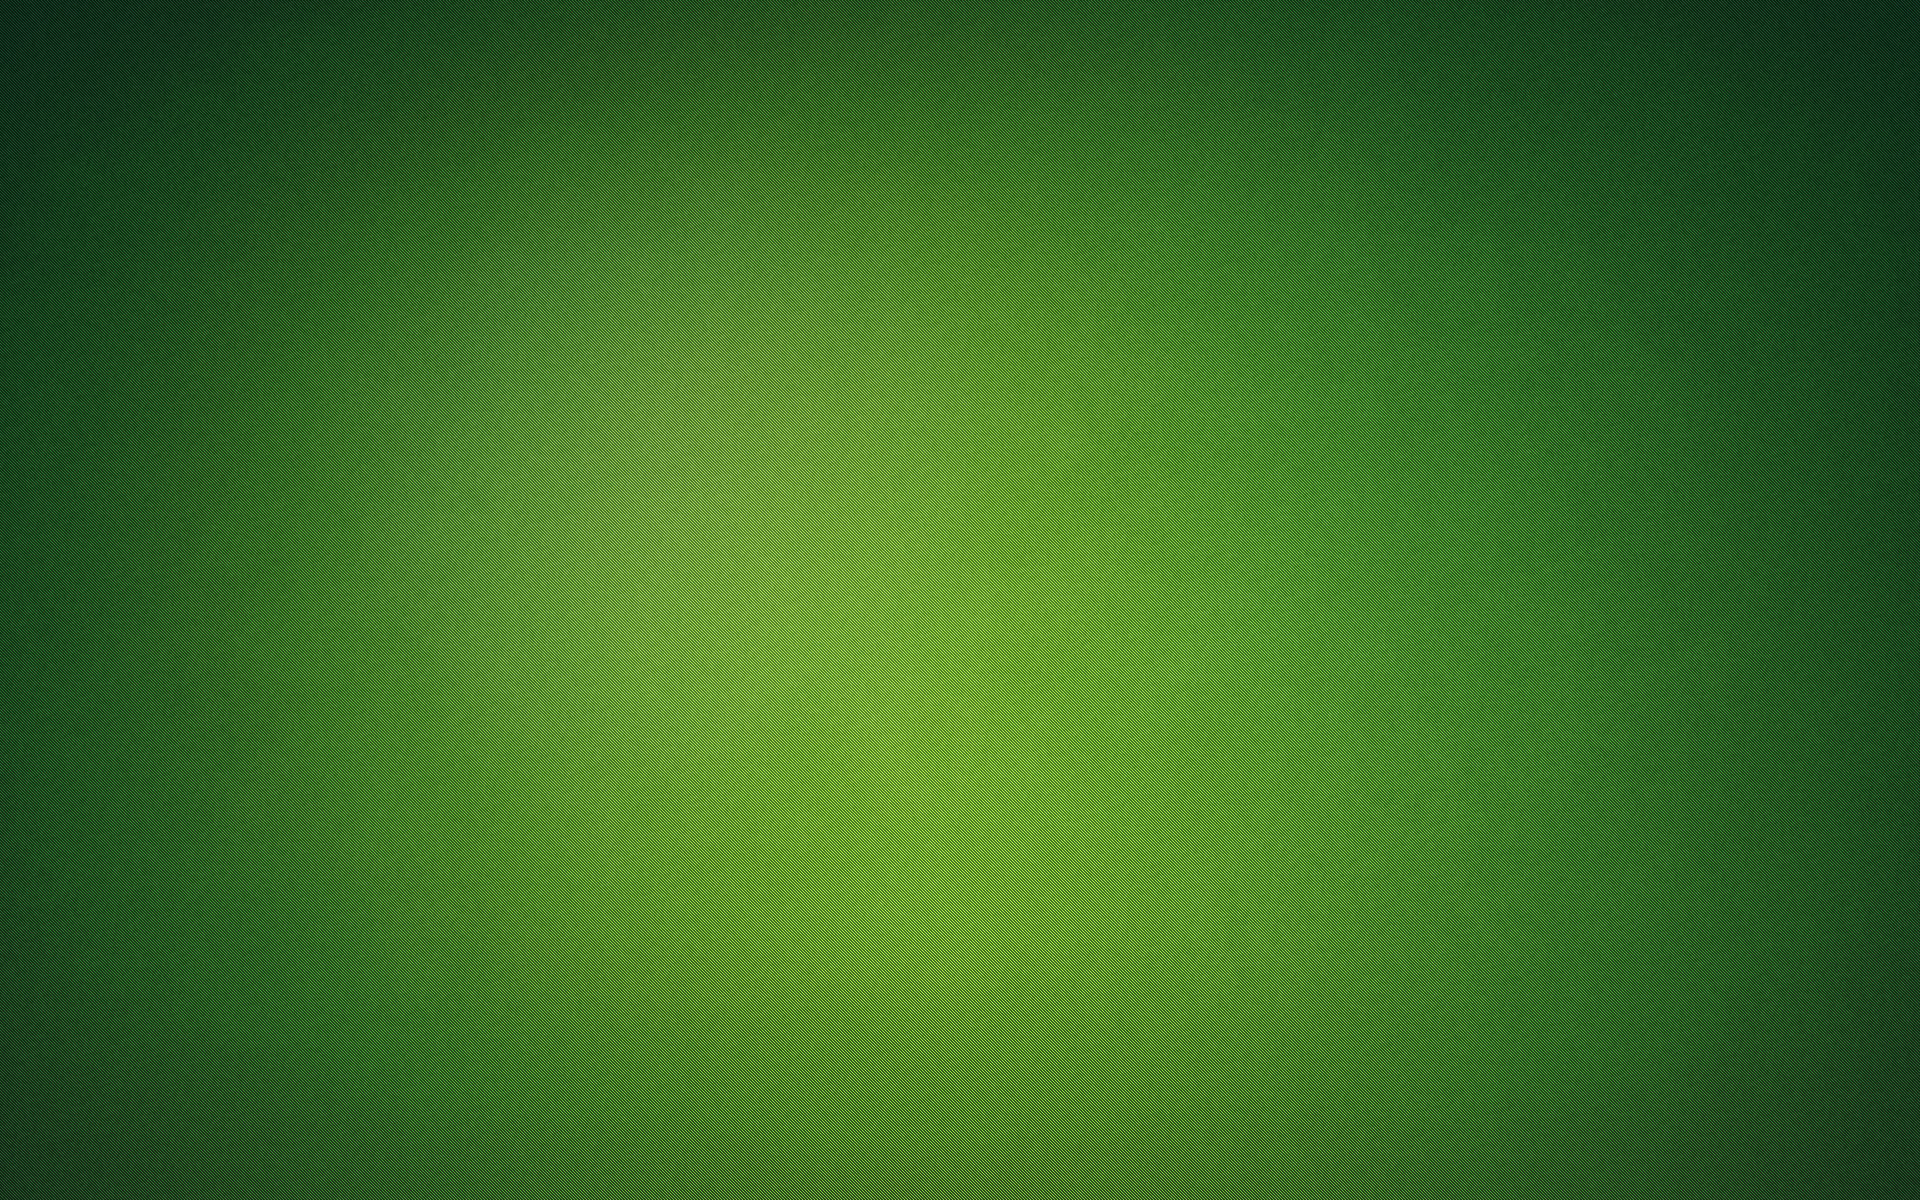 зеленый, абстракции, фоны, простой фон, зеленый фон - обои на рабочий стол